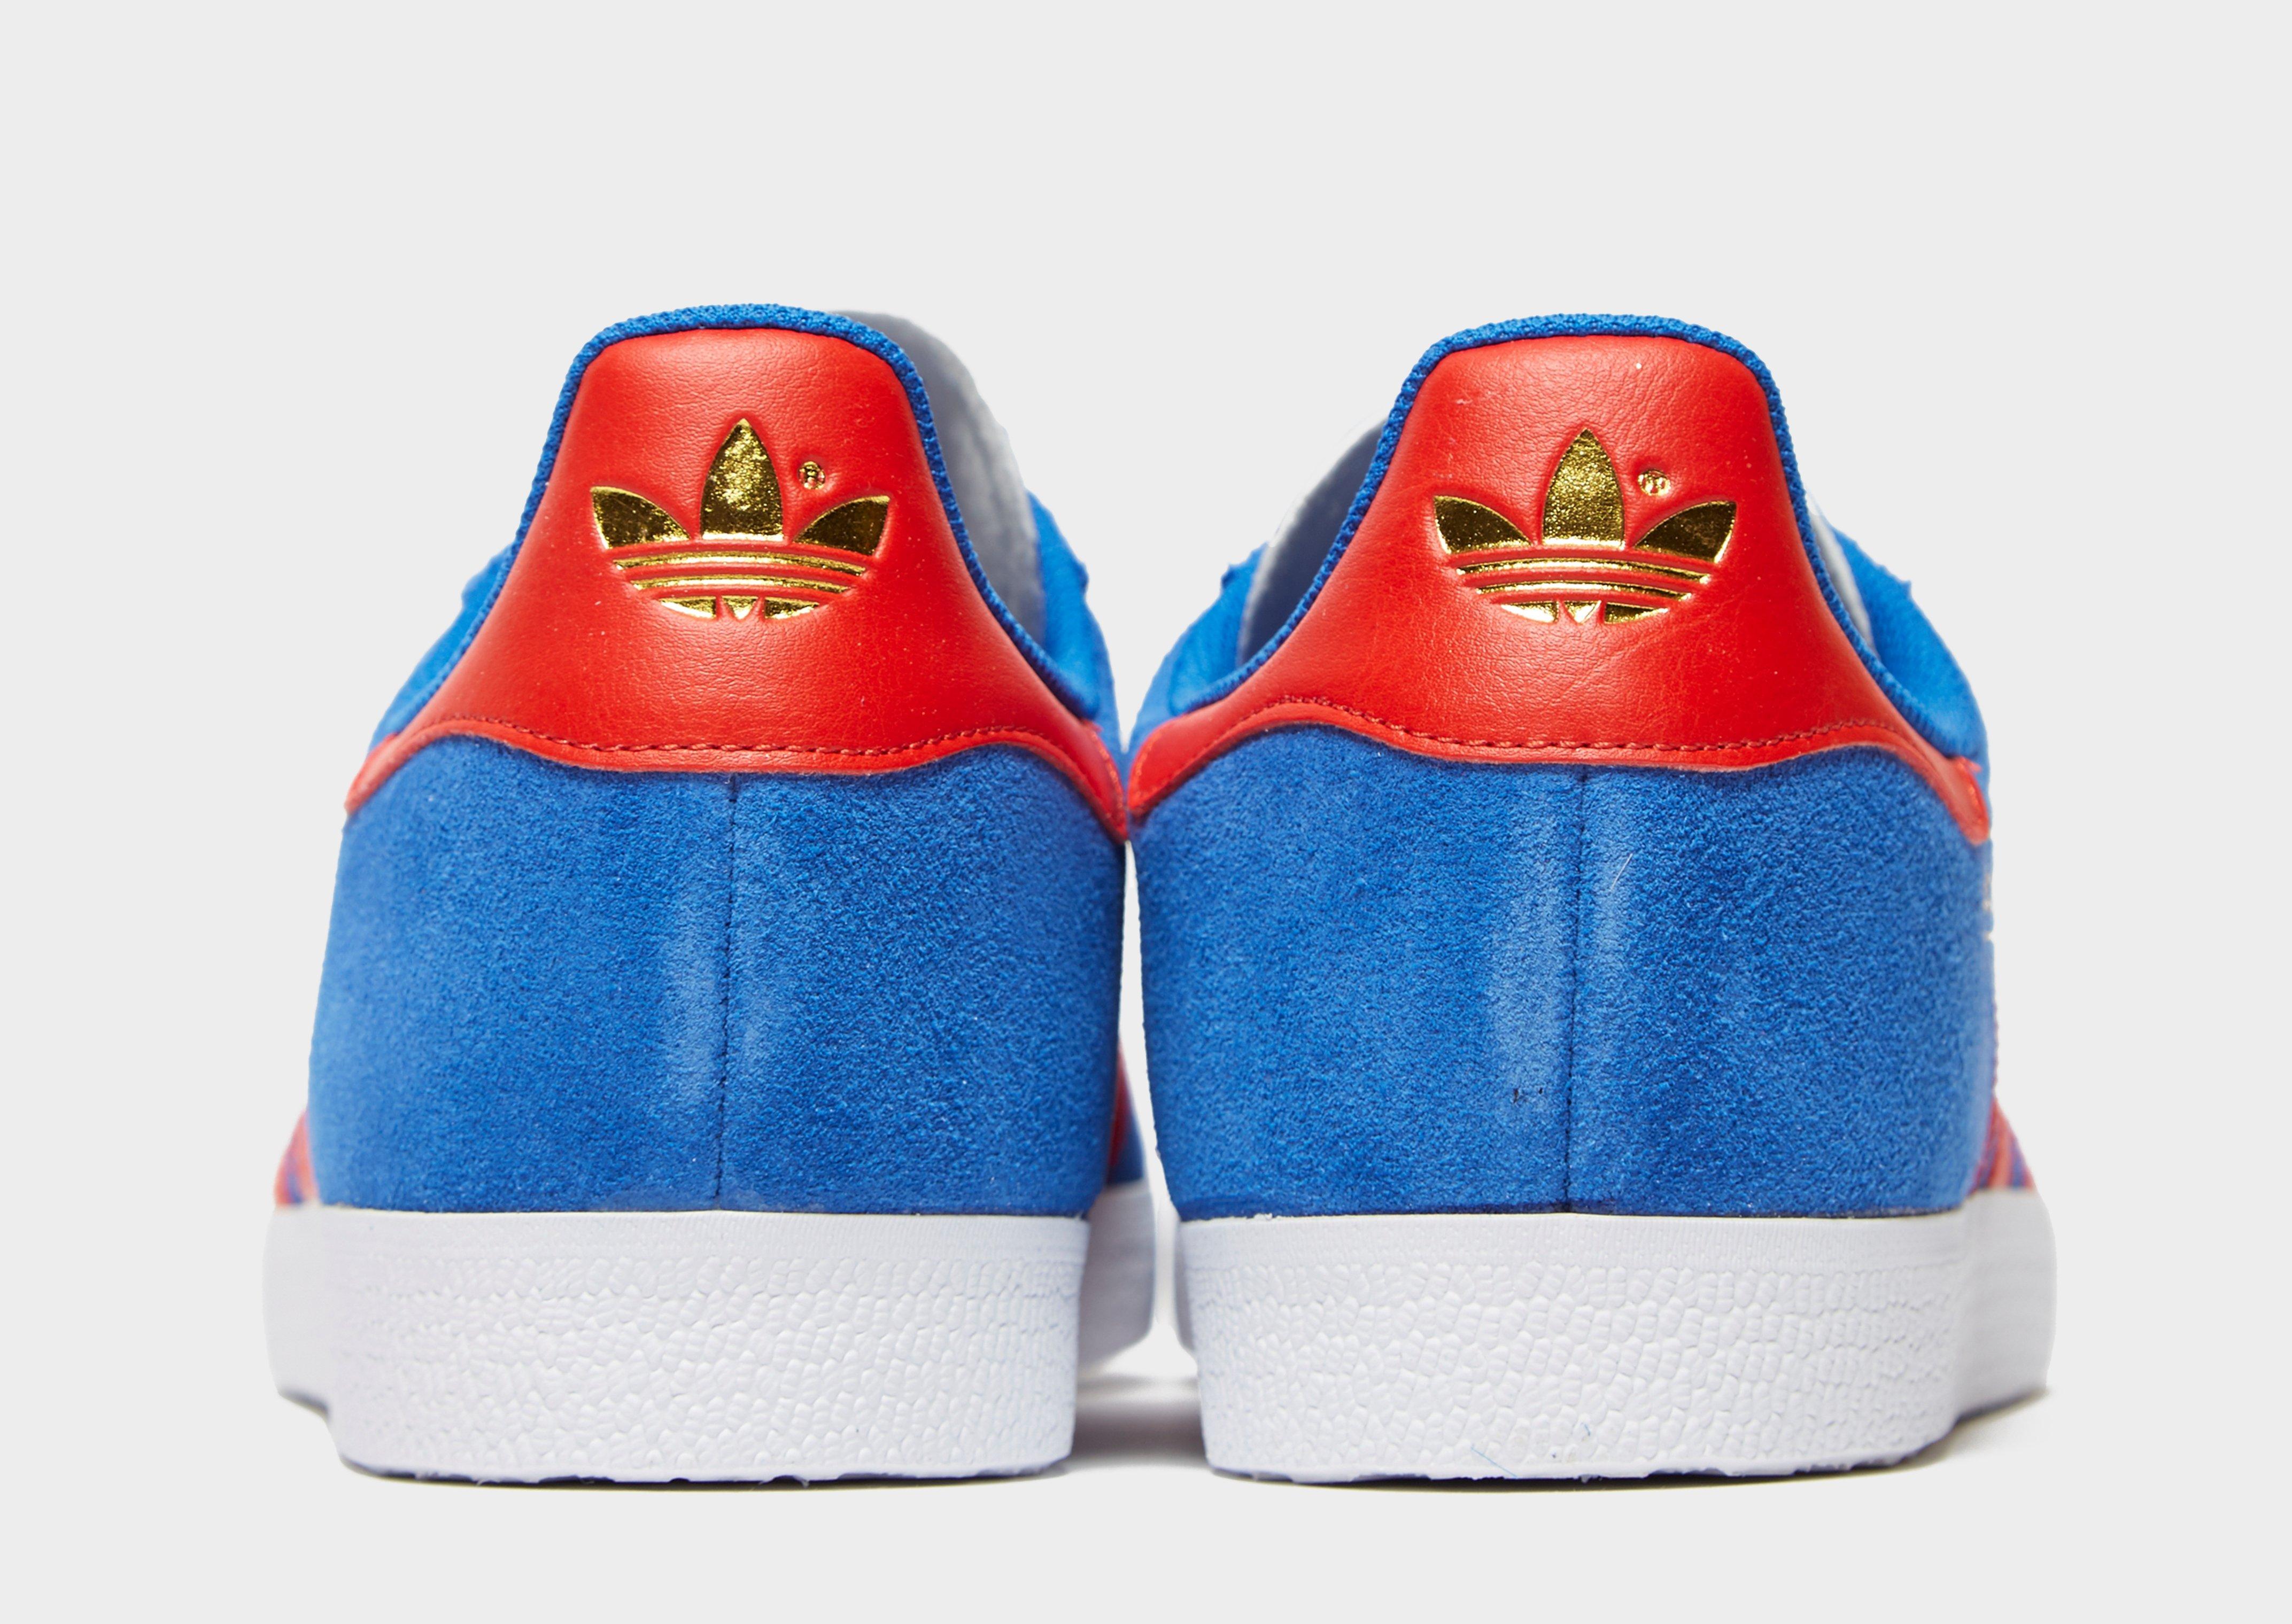 adidas originals gazelle red and blue